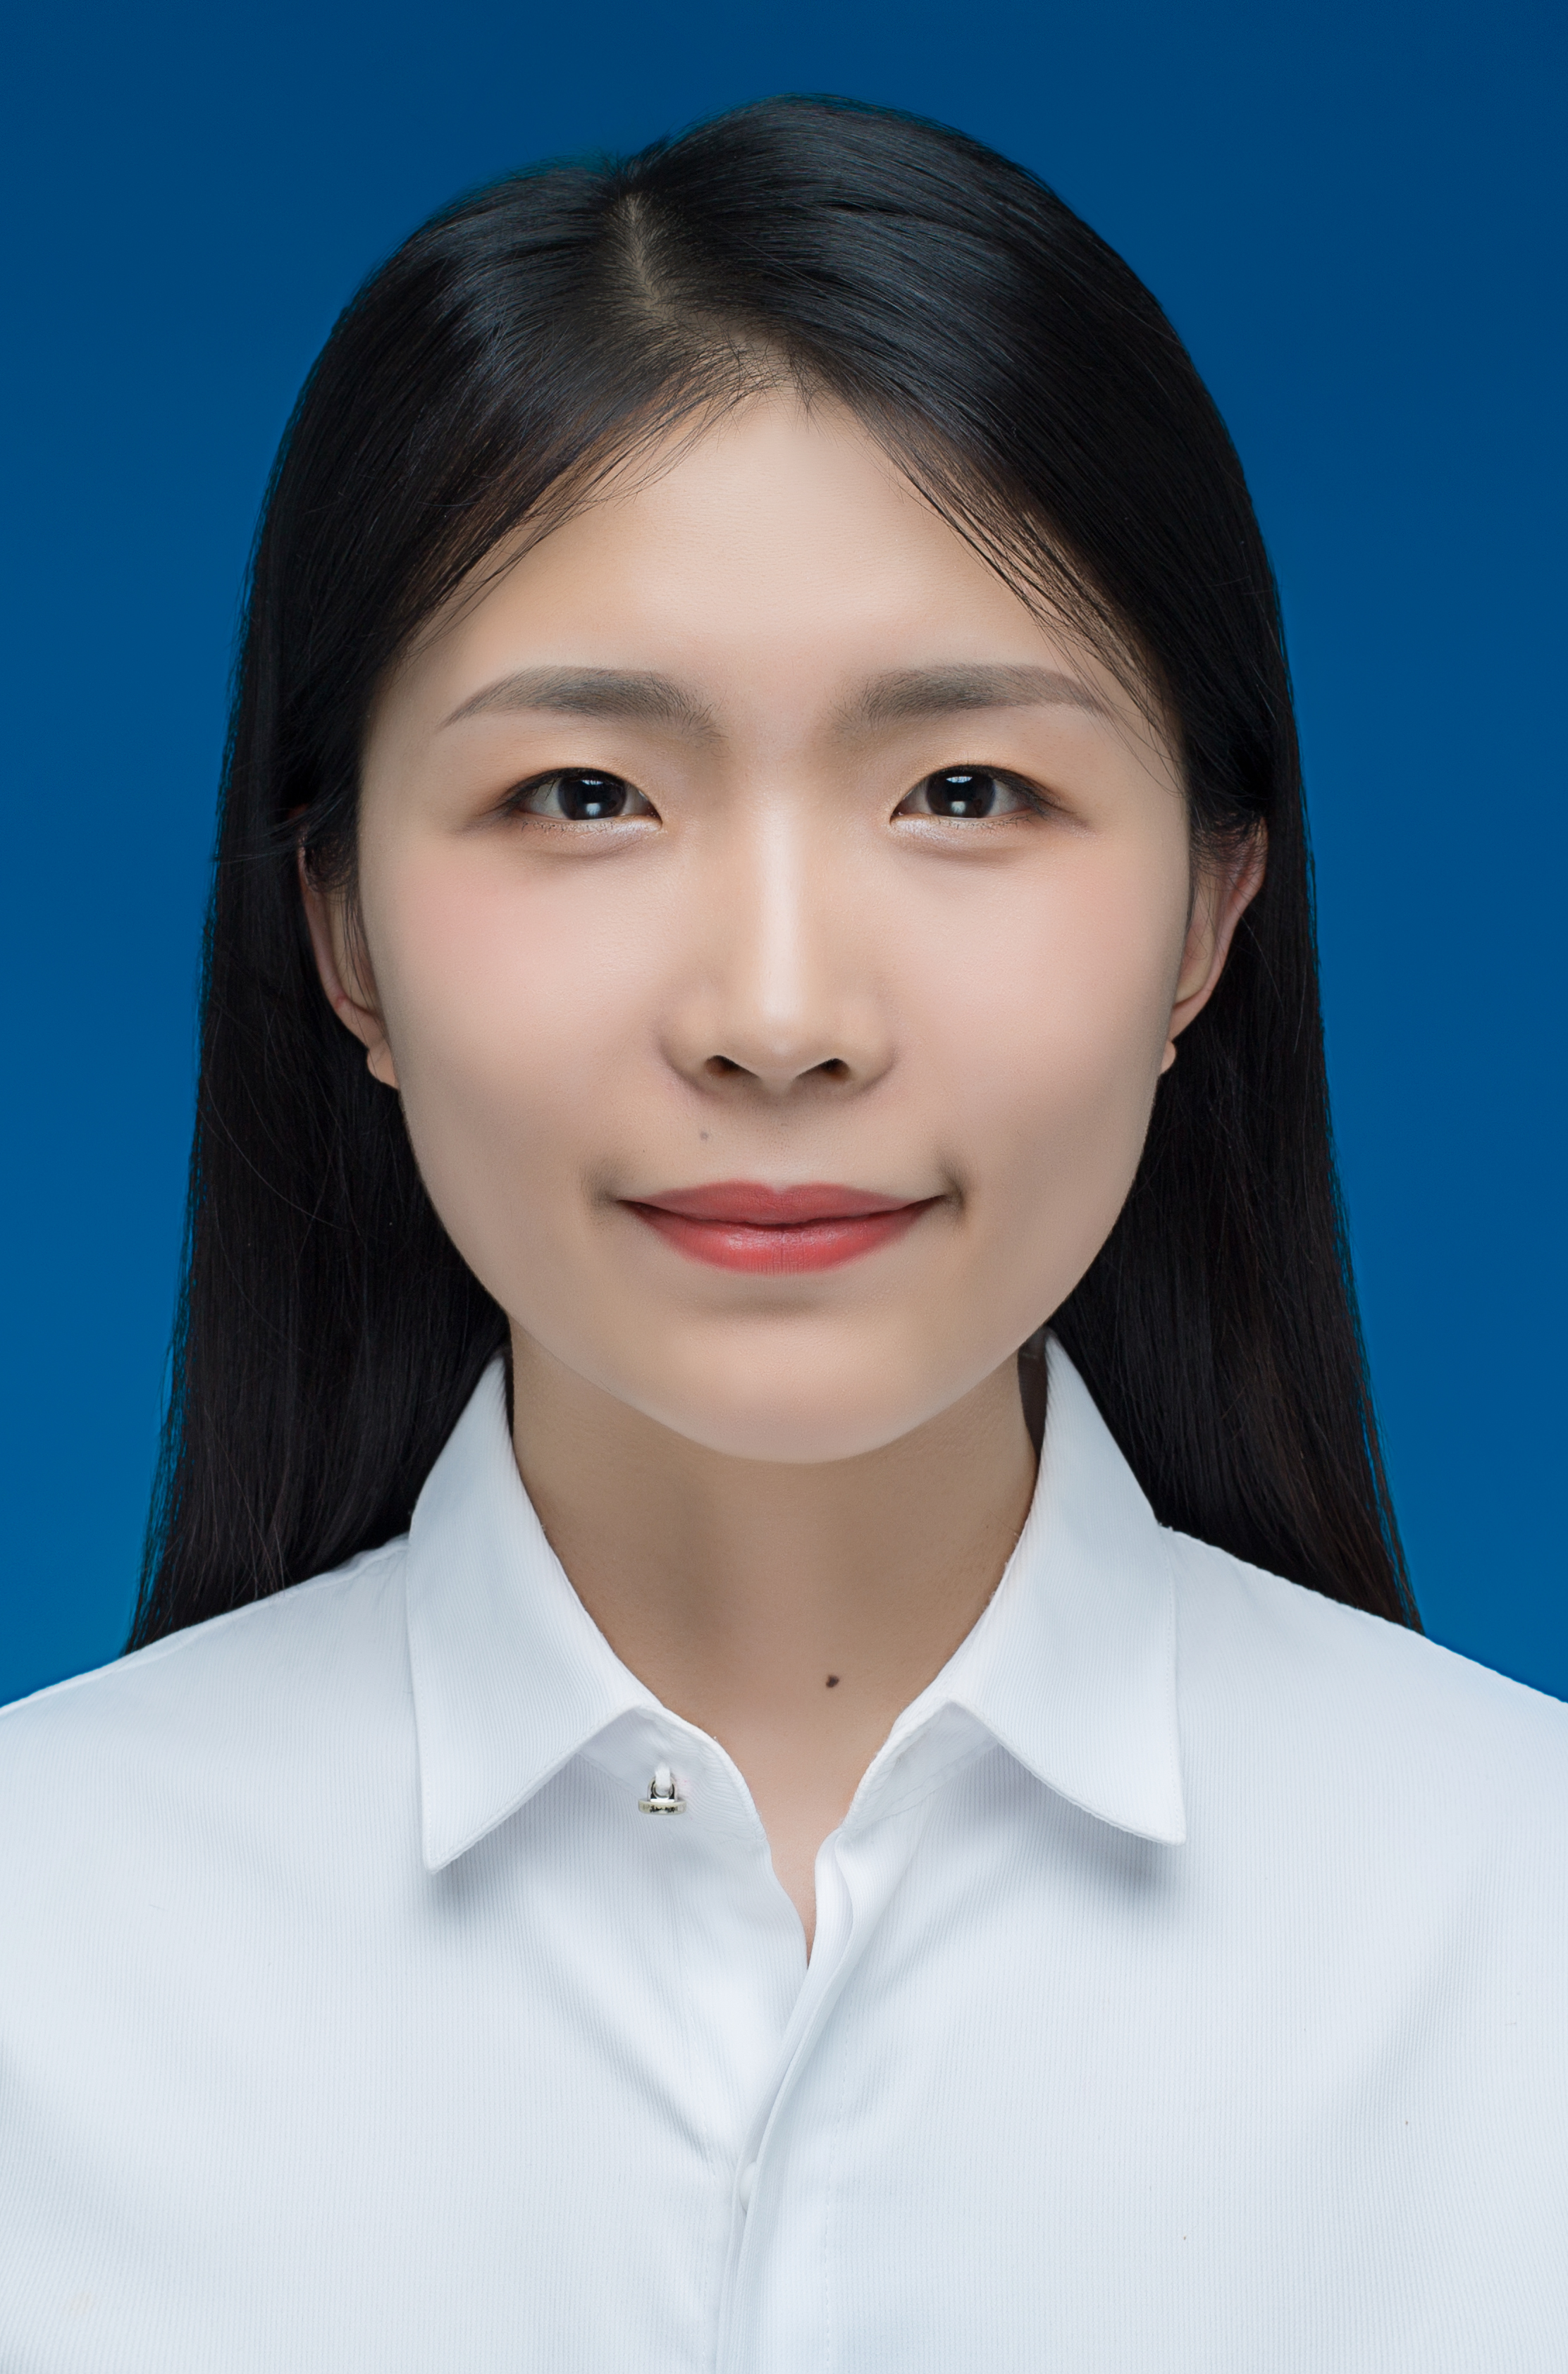 Xiao-Qi Zhang